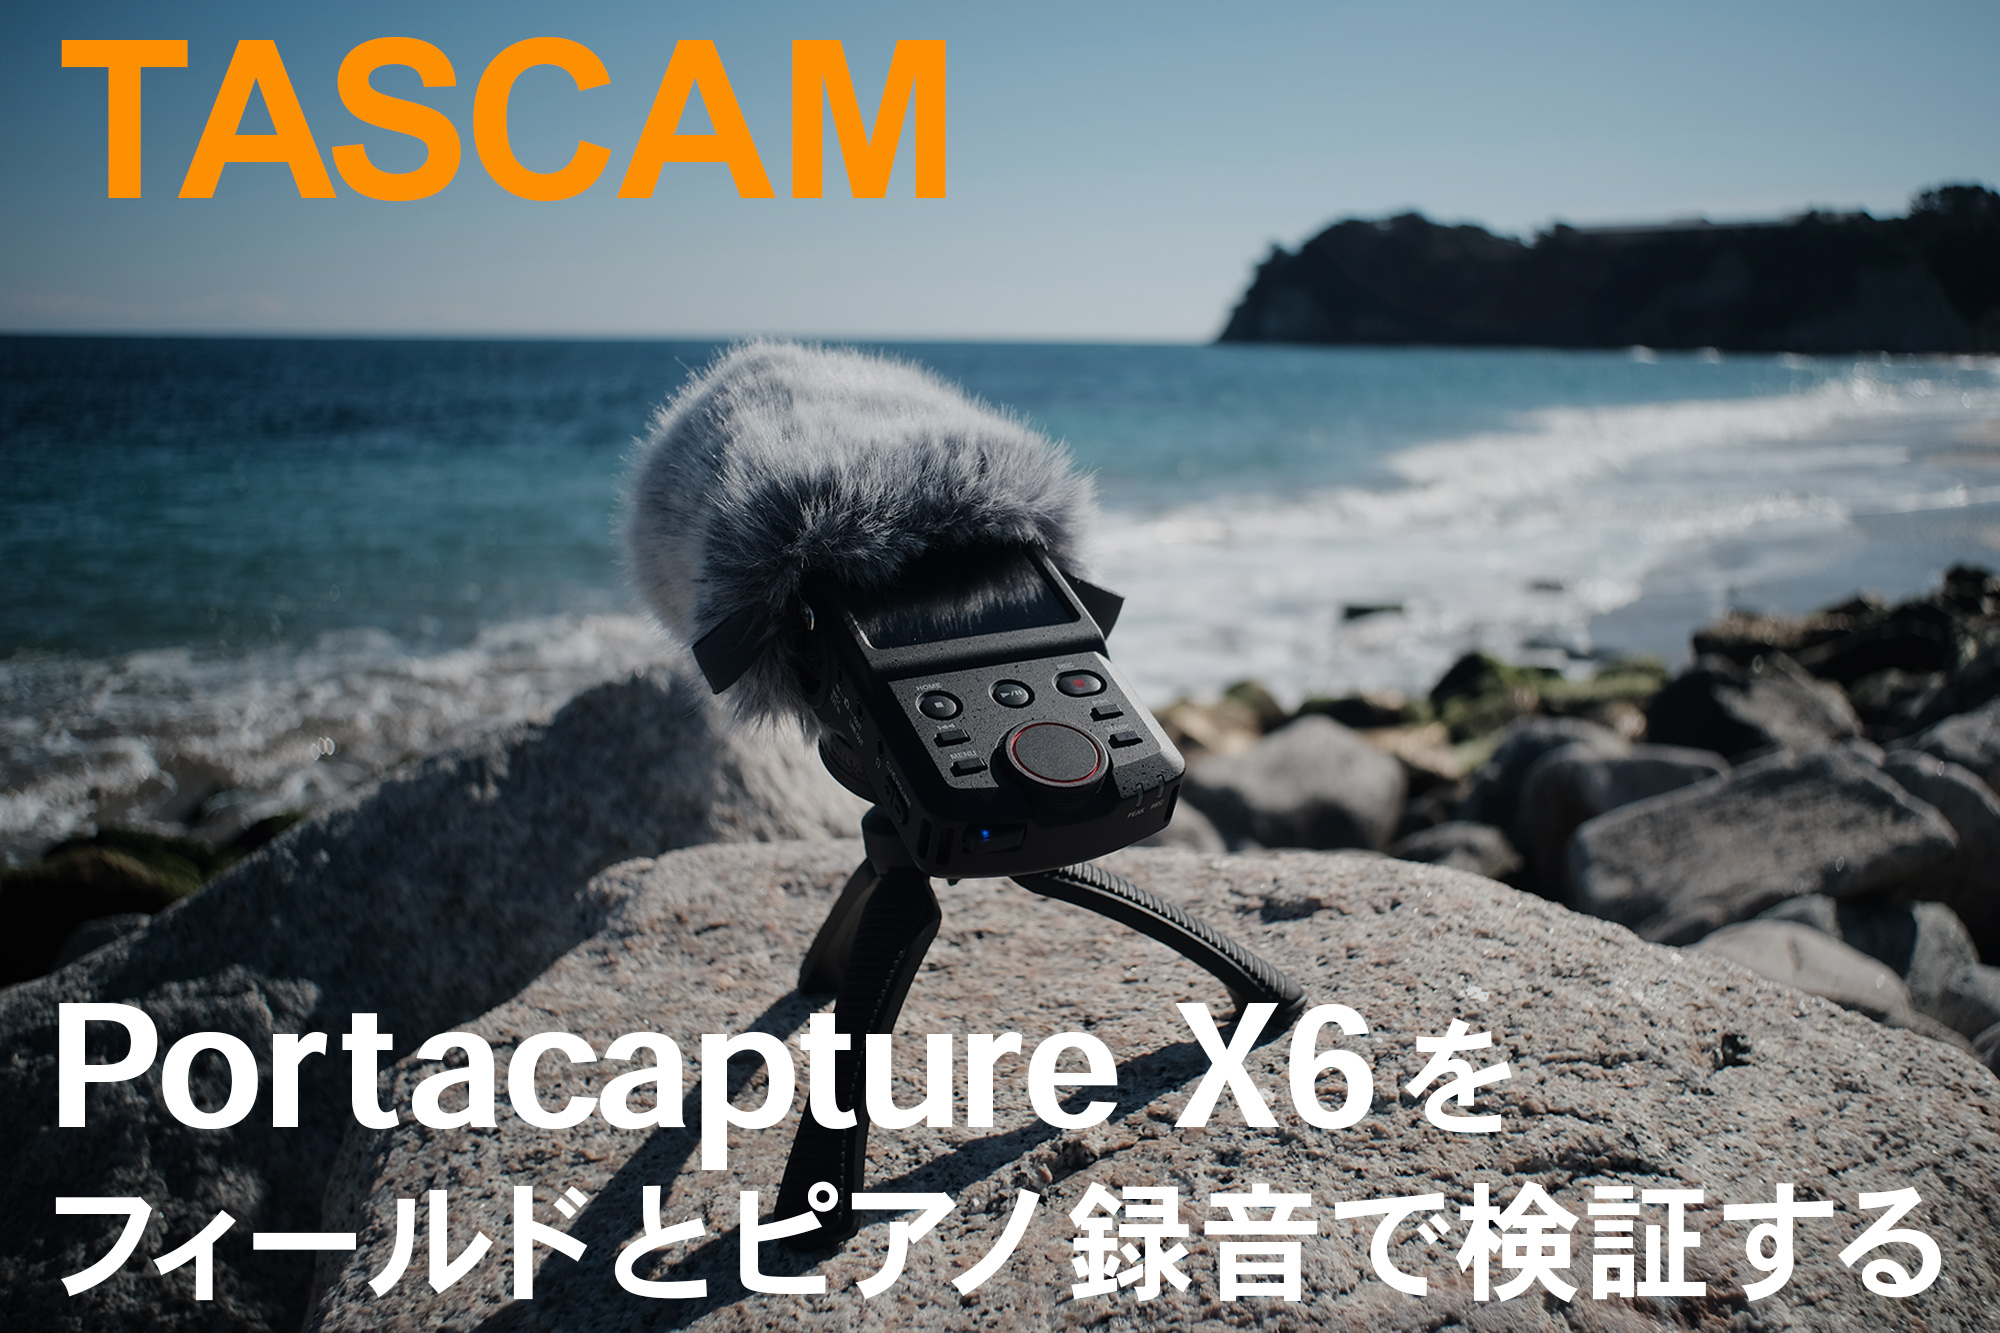 TASCAM Portacapture X6 www.krzysztofbialy.com